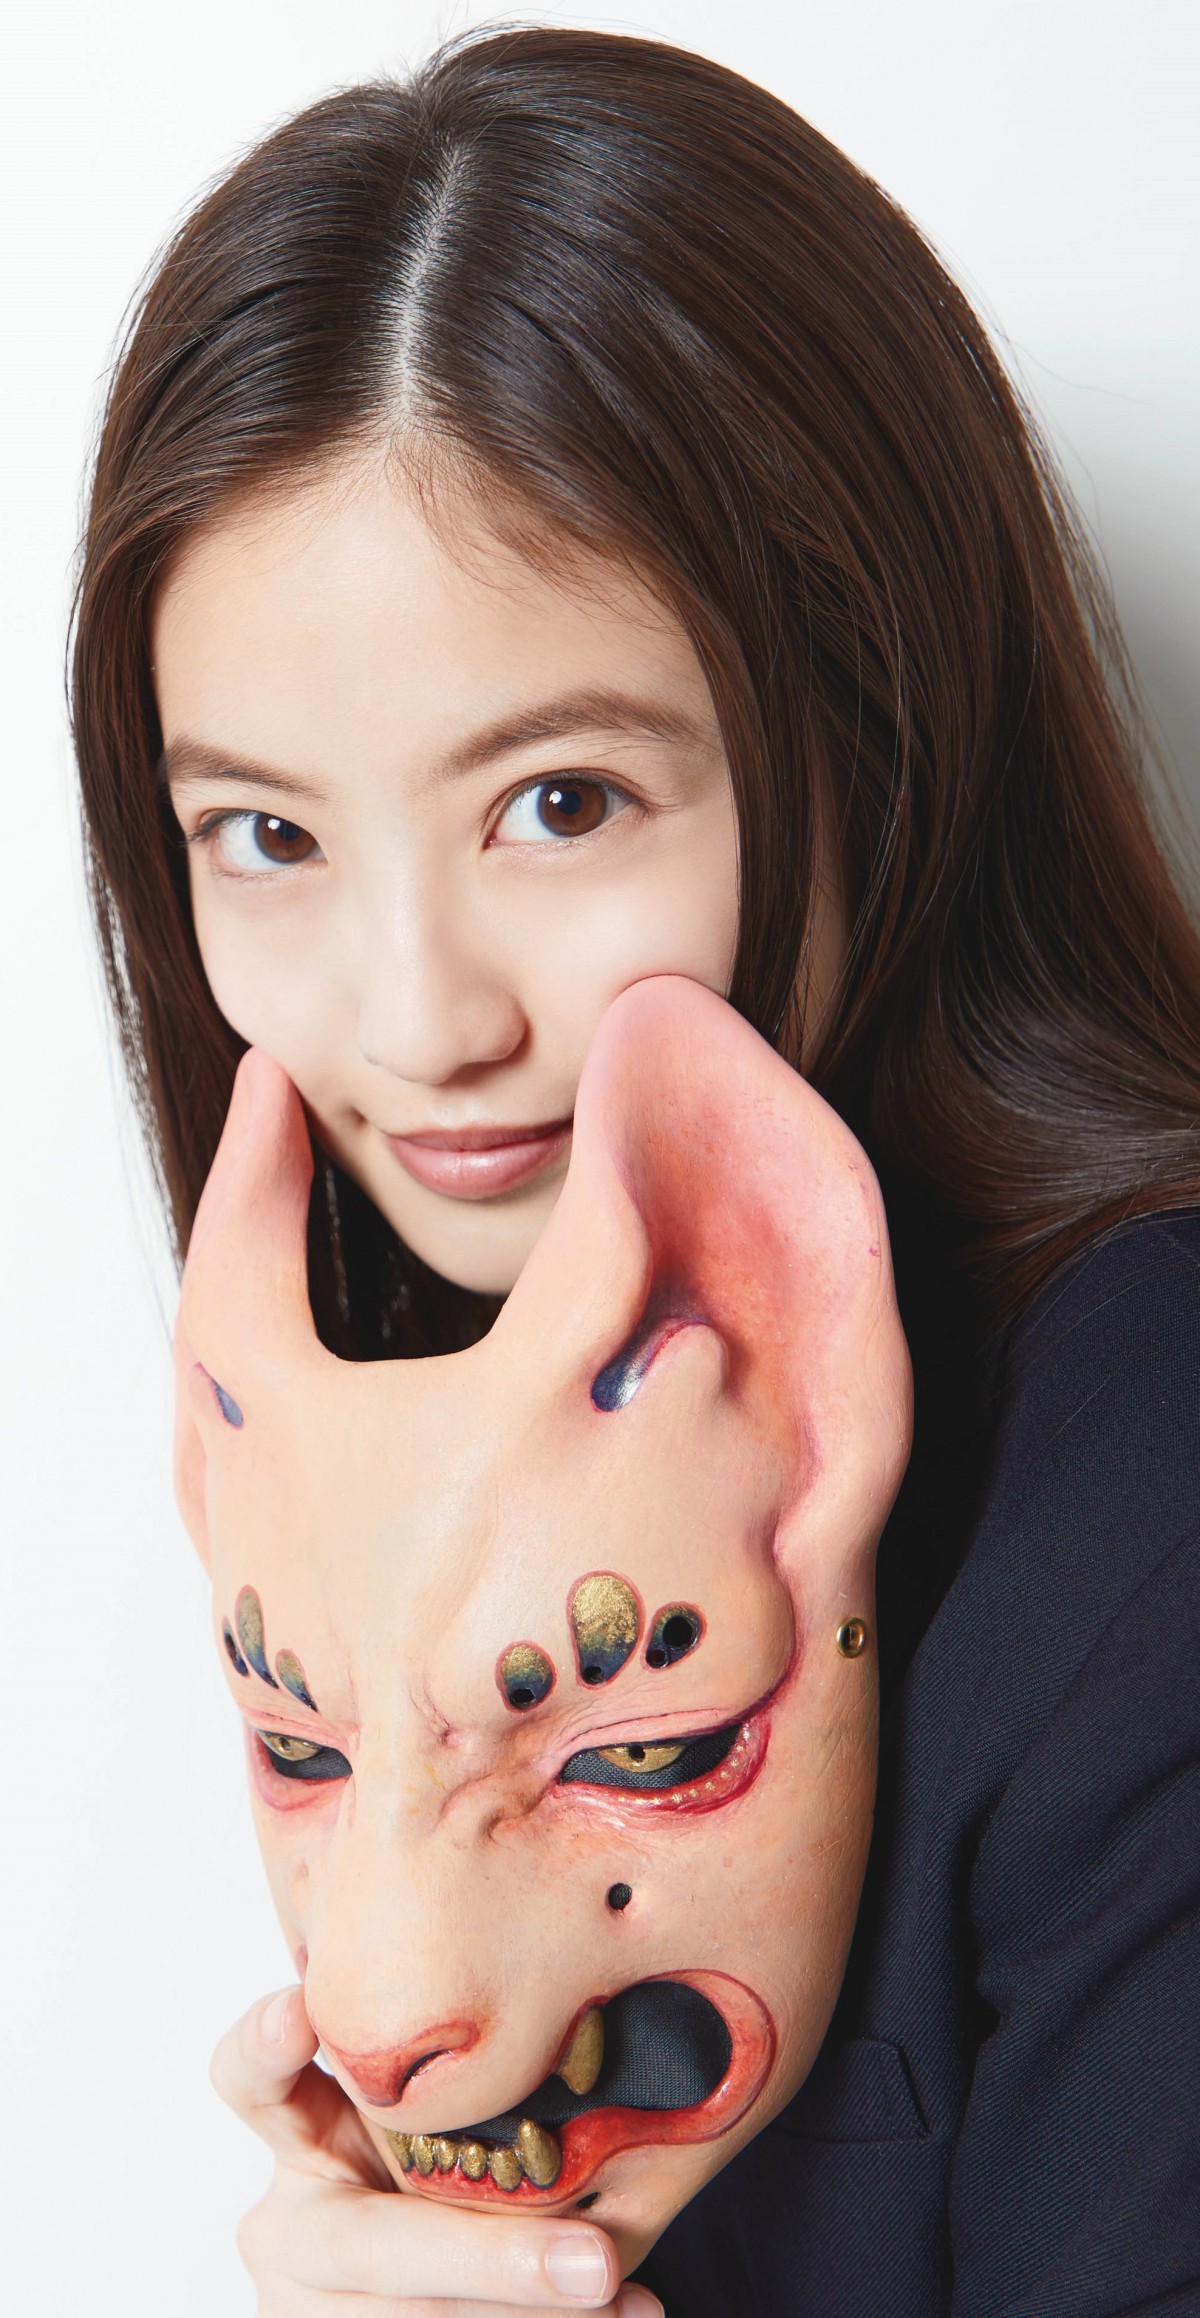 今田美桜 顔を隠して 京極夏彦の新作カバー飾る 異例づくし企画も快諾 Oricon News